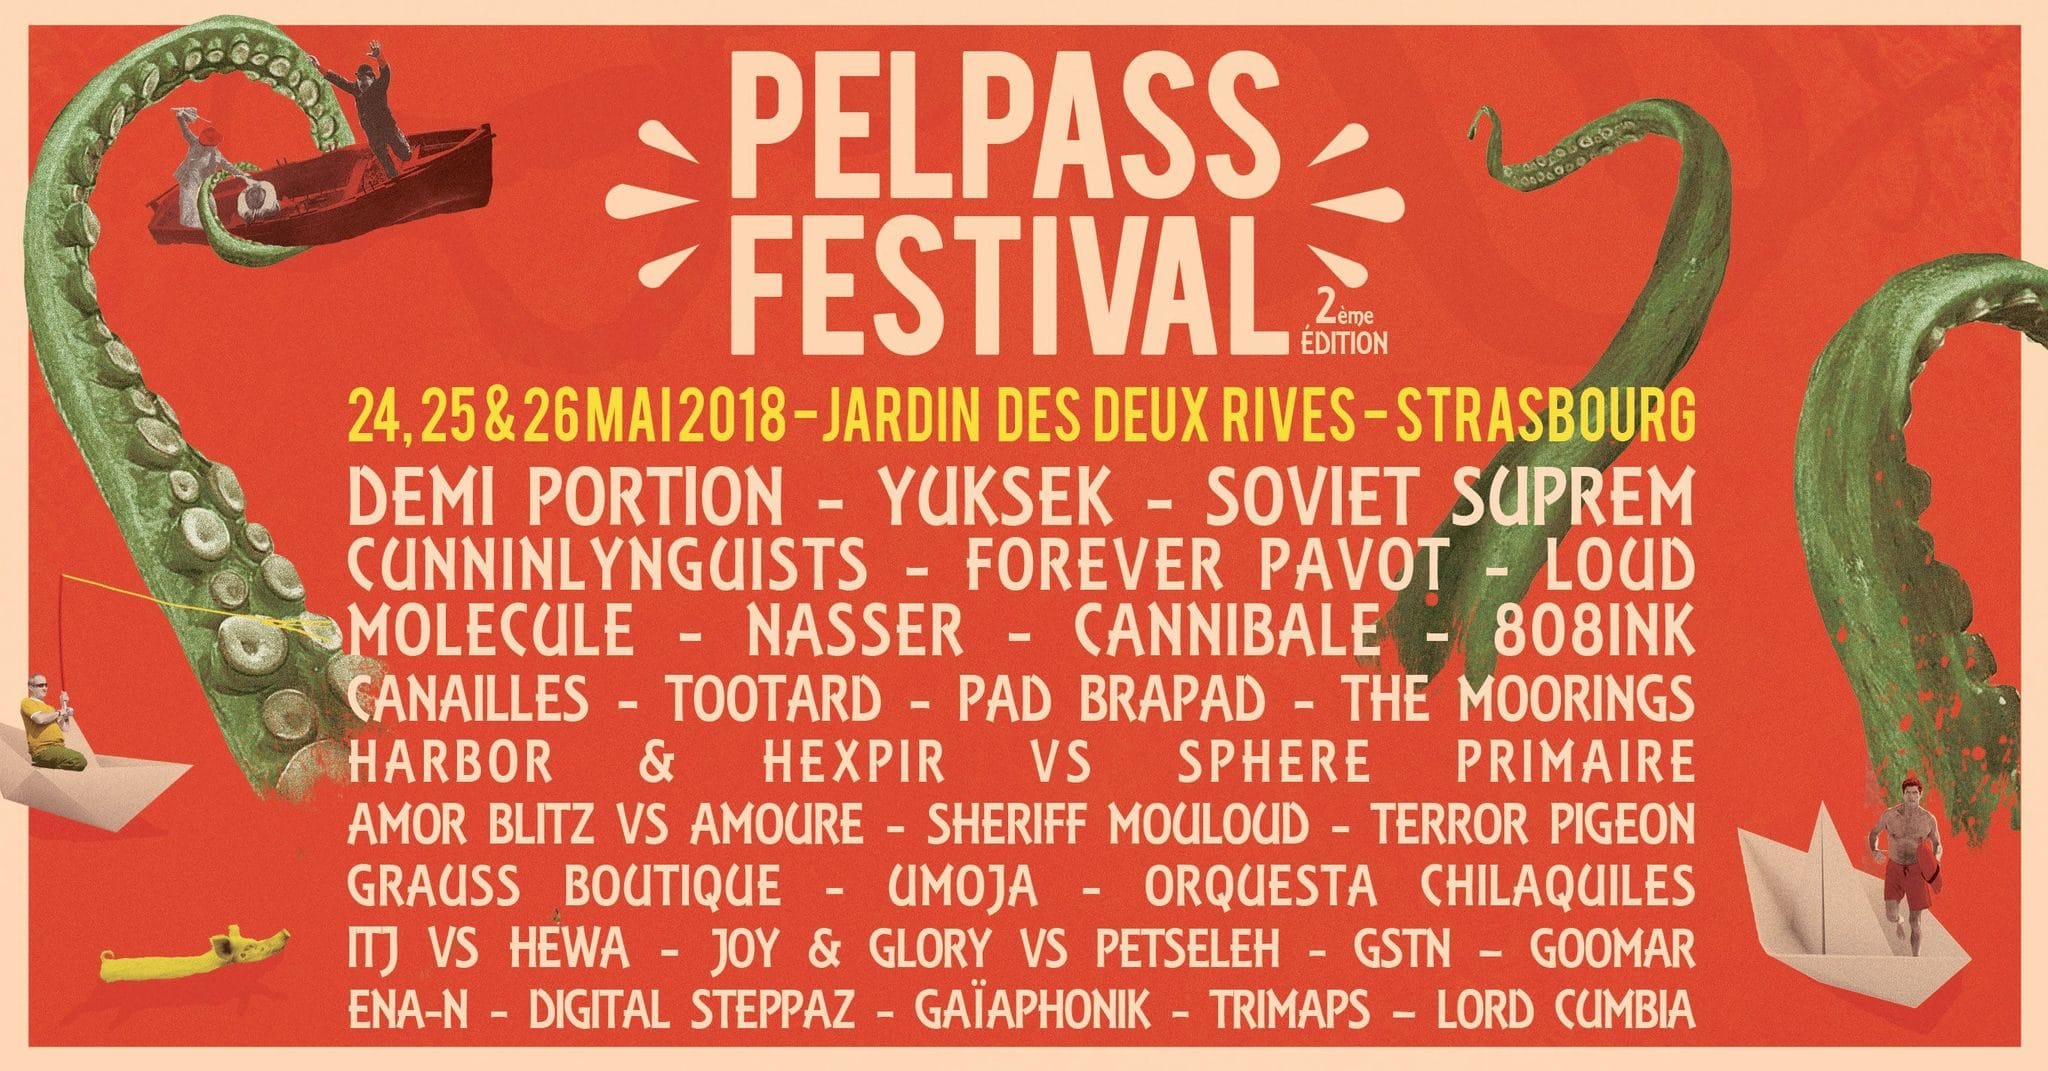 De jeudi à samedi, notre sélection pour 3 jours de musique en plein air au Pelpass Festival